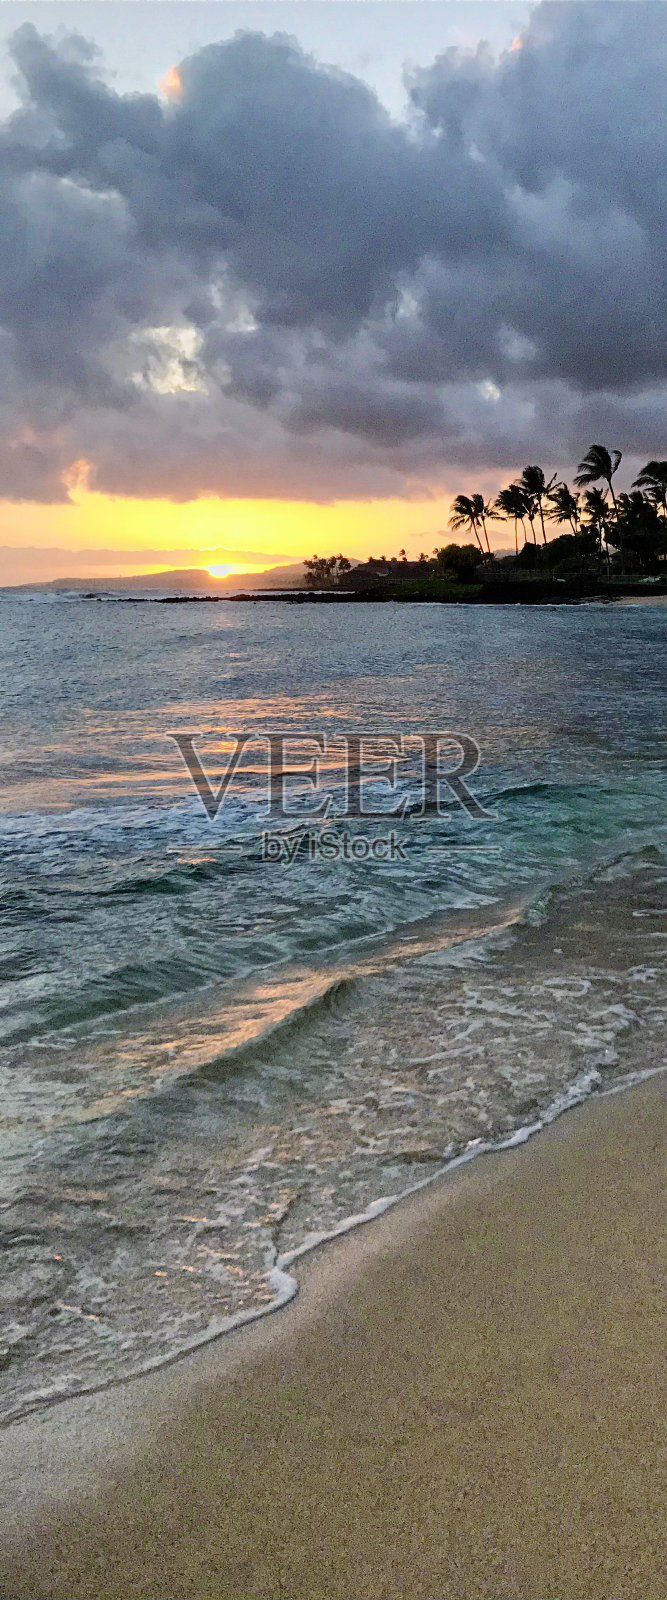 夏威夷考艾岛波伊普海滩的日落照片摄影图片